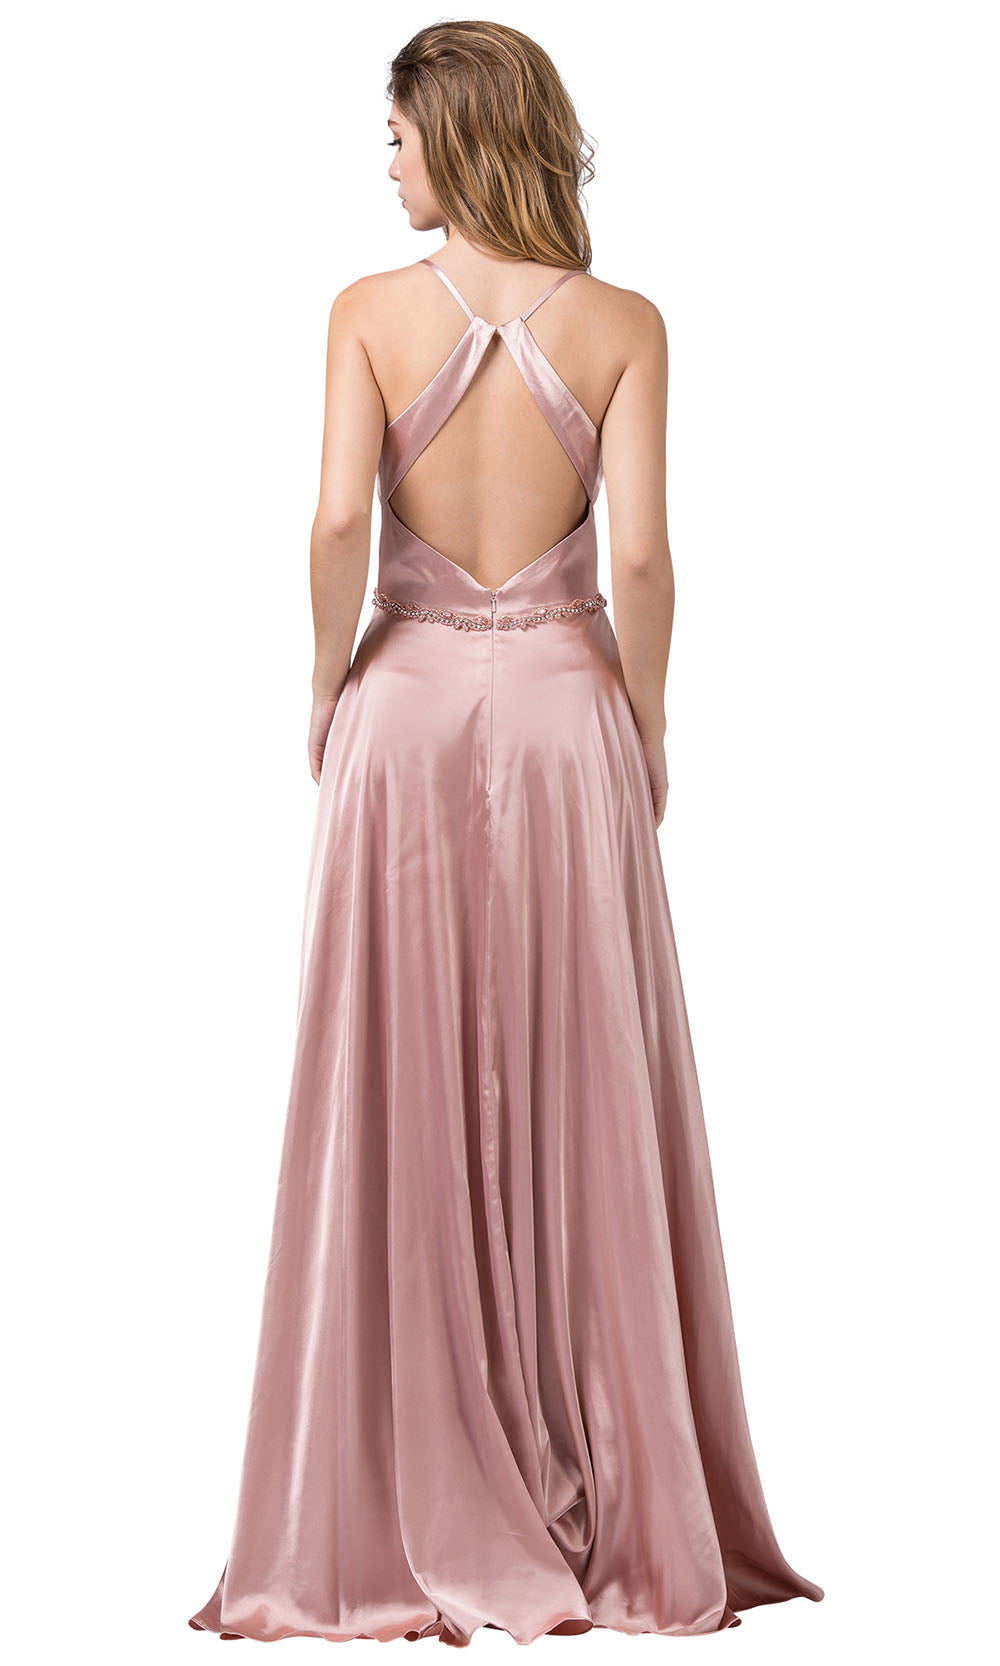 Dancing Queen - 2652 Sleek Cutout Back High Slit A-Line Dress In Pink